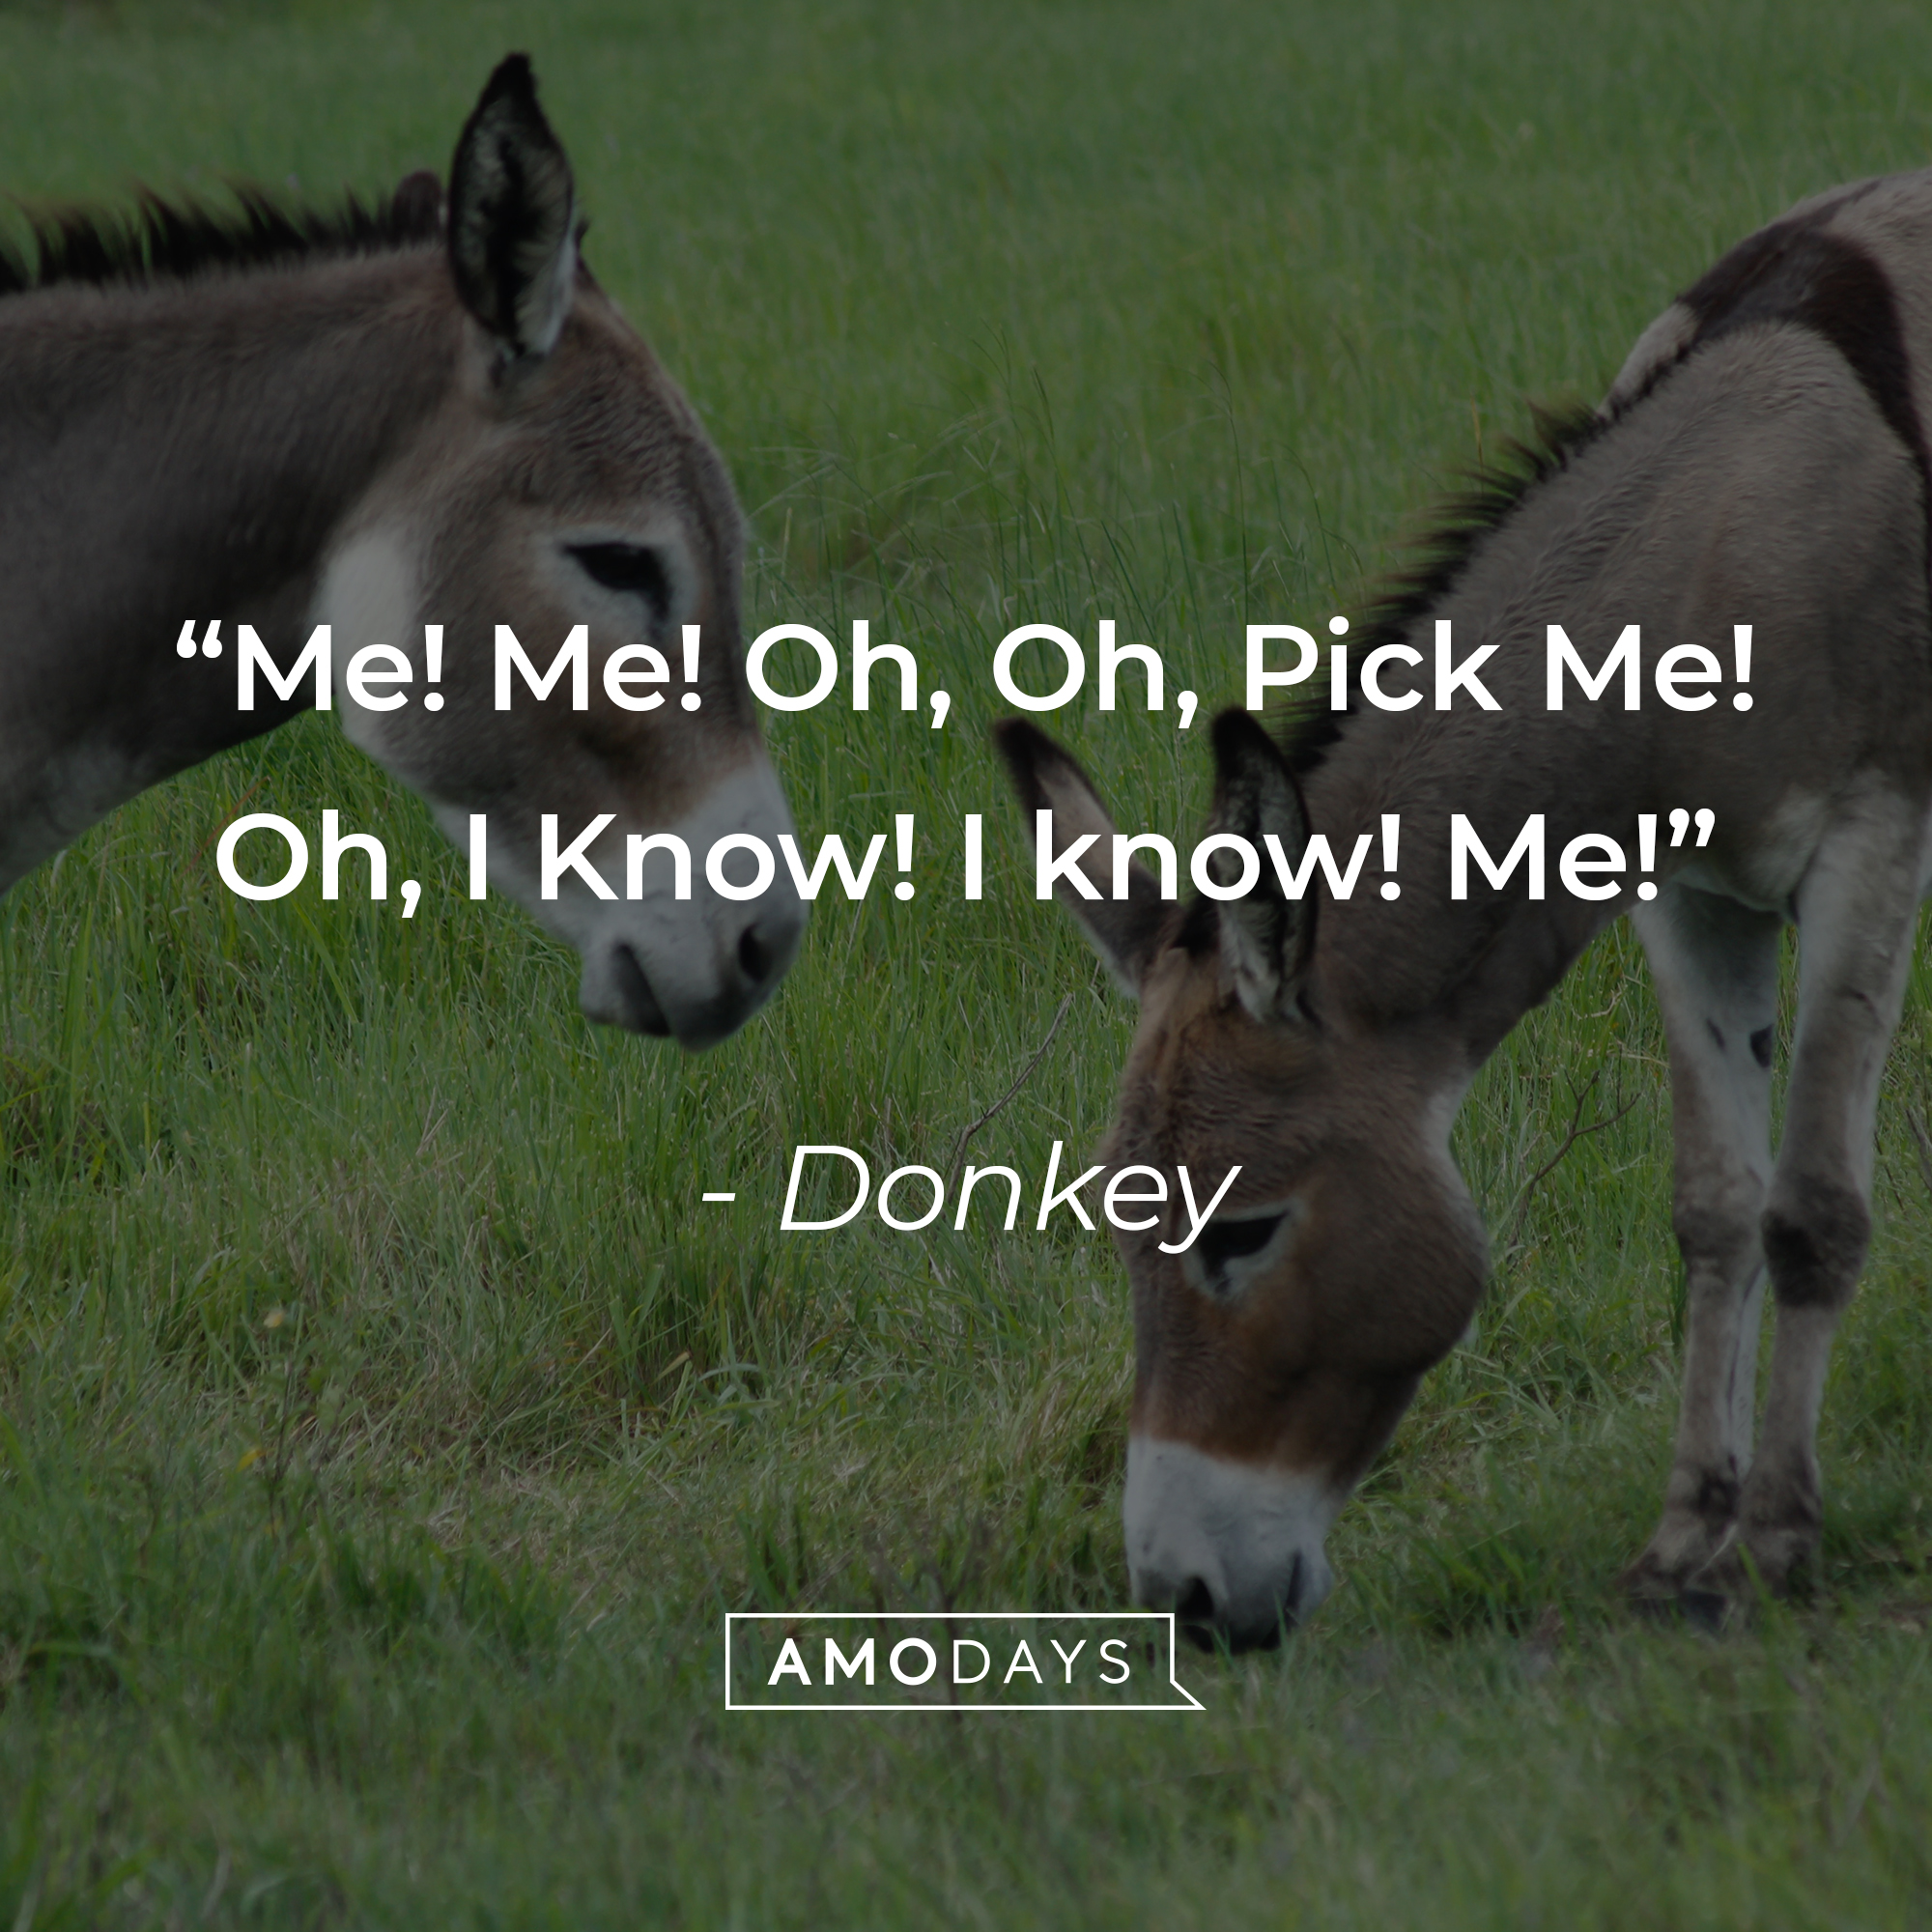 Donkey's quote: "Me! Me! Oh, Oh, Pick Me! Oh, I Know! I know! Me!" | Source: Unsplash